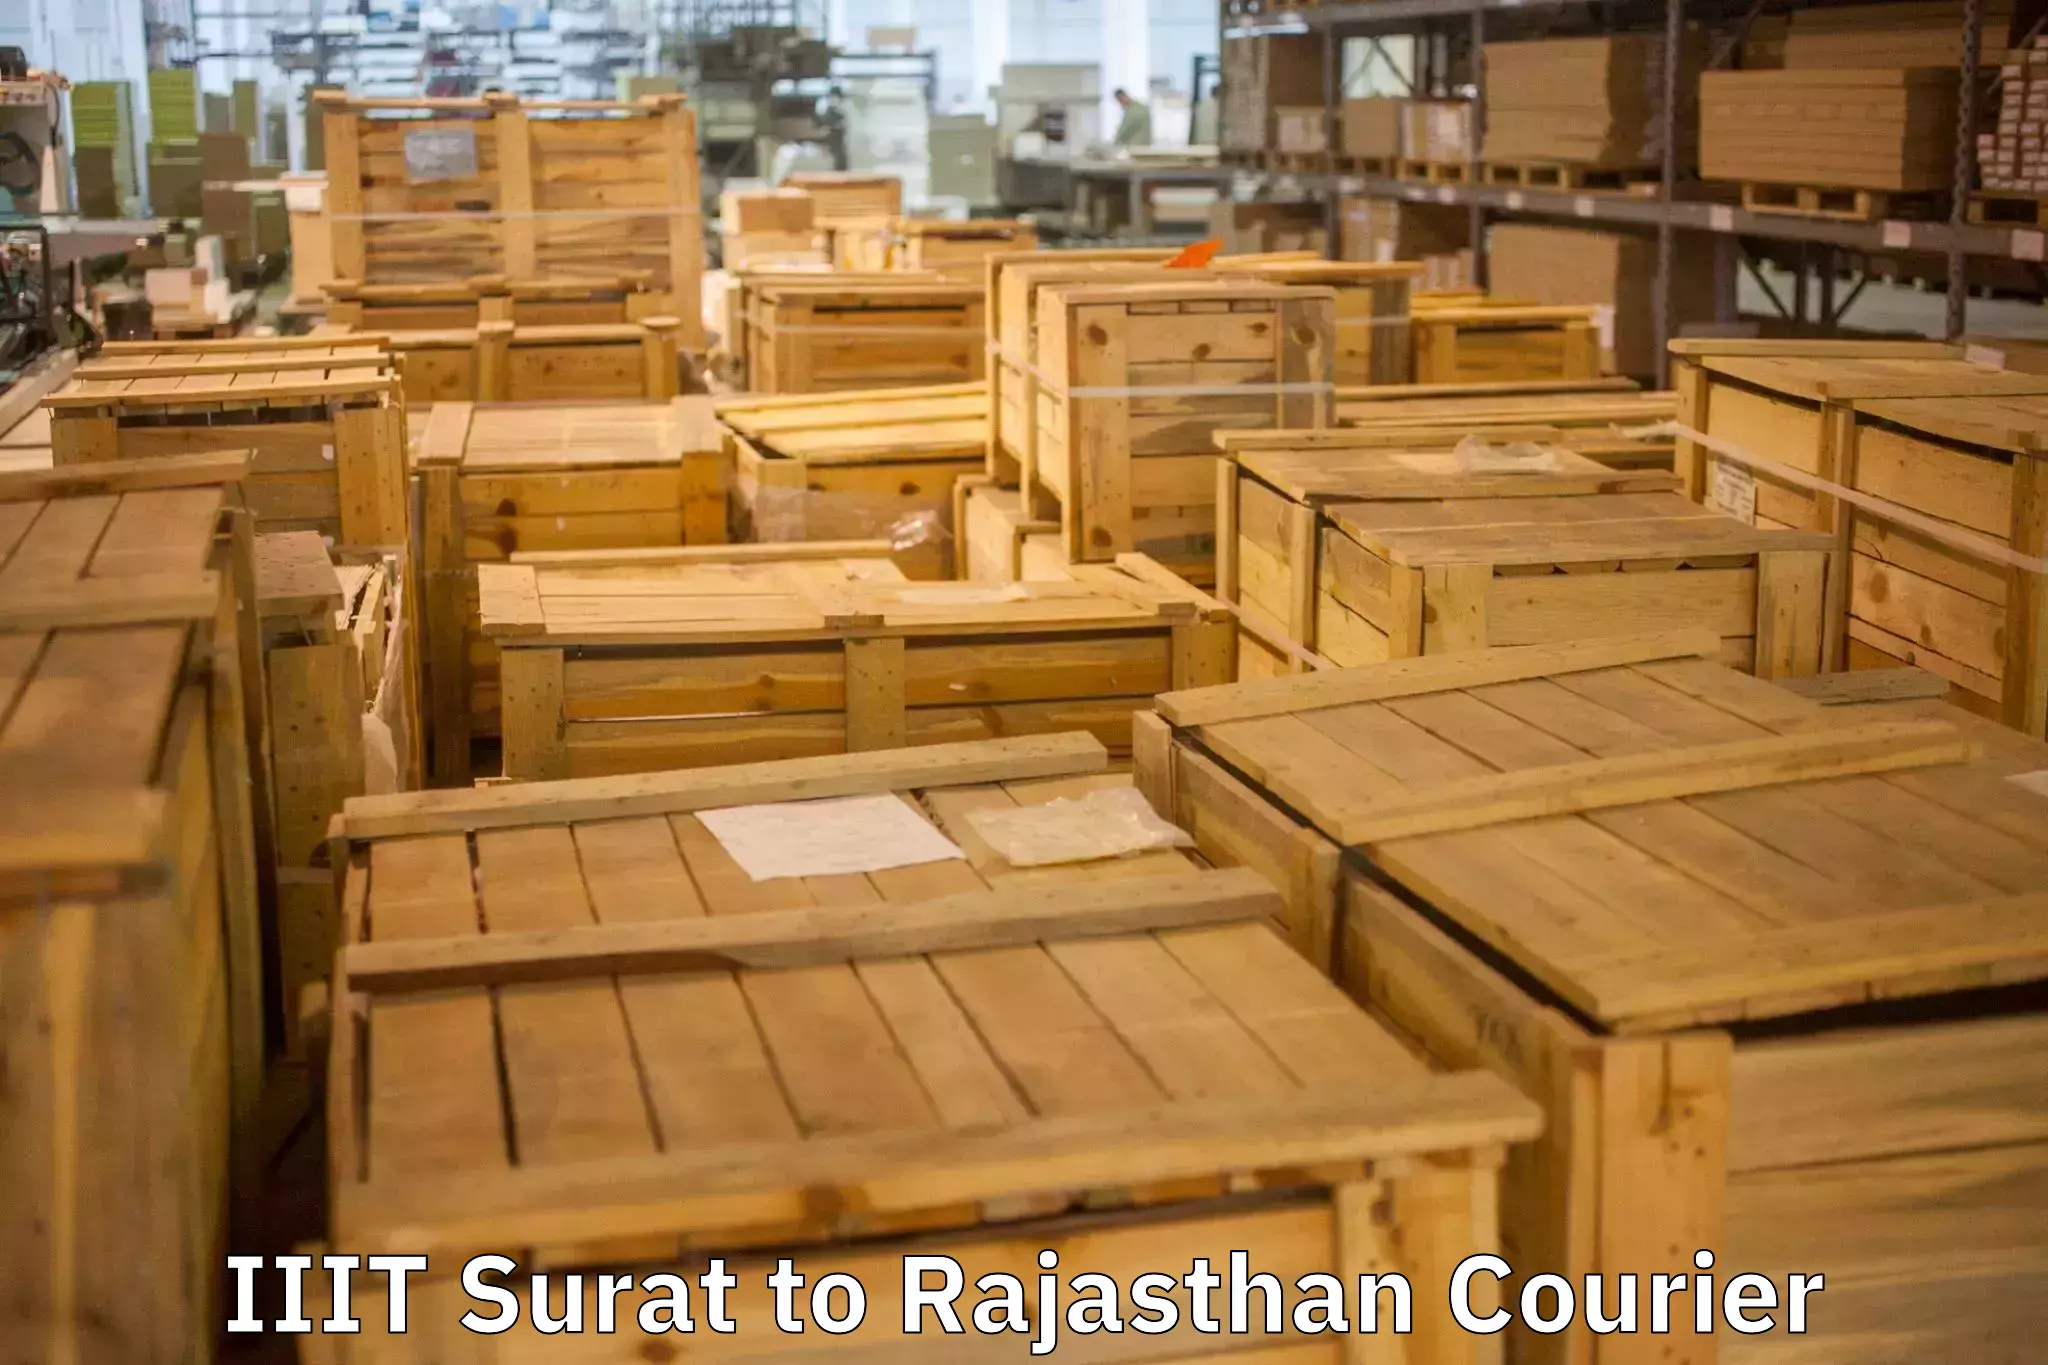 Stress-free moving IIIT Surat to Rajasthan